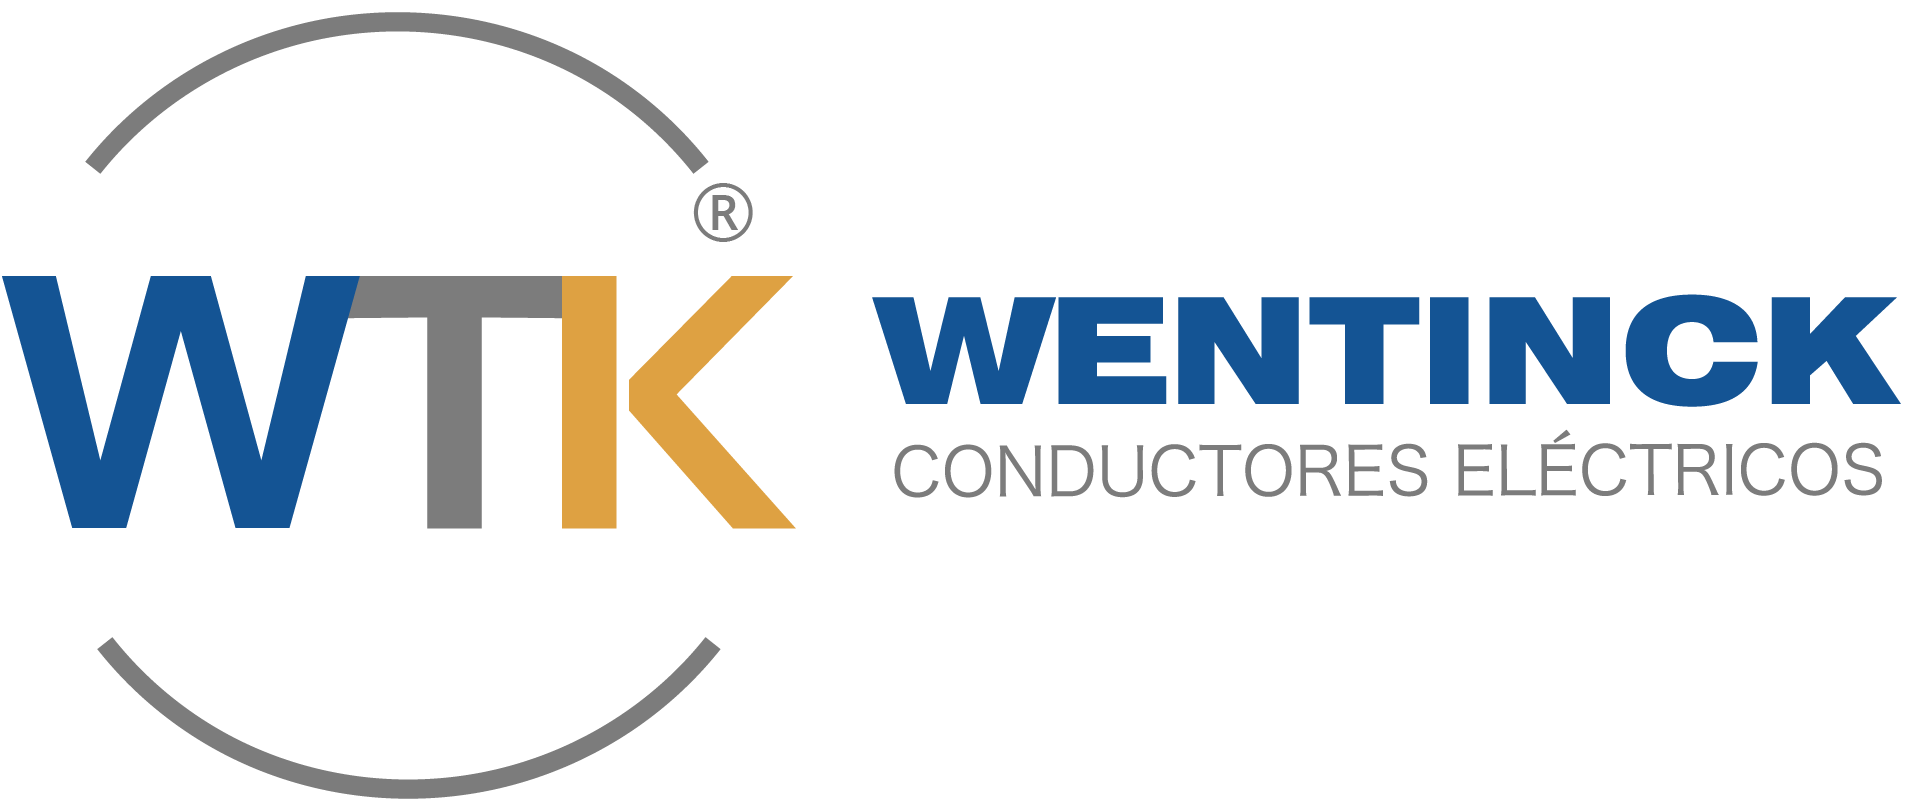 WTK Wentinck Conductores Eléctricos